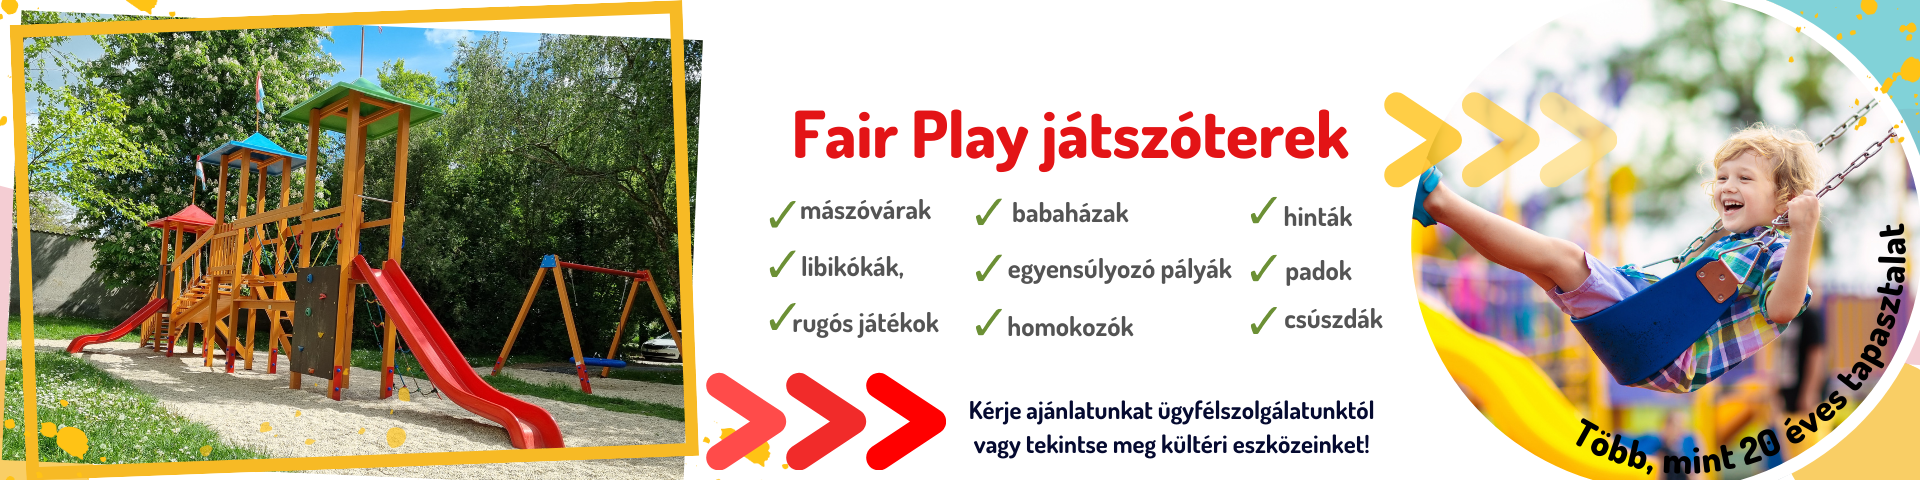 fairplay_jatszoterek